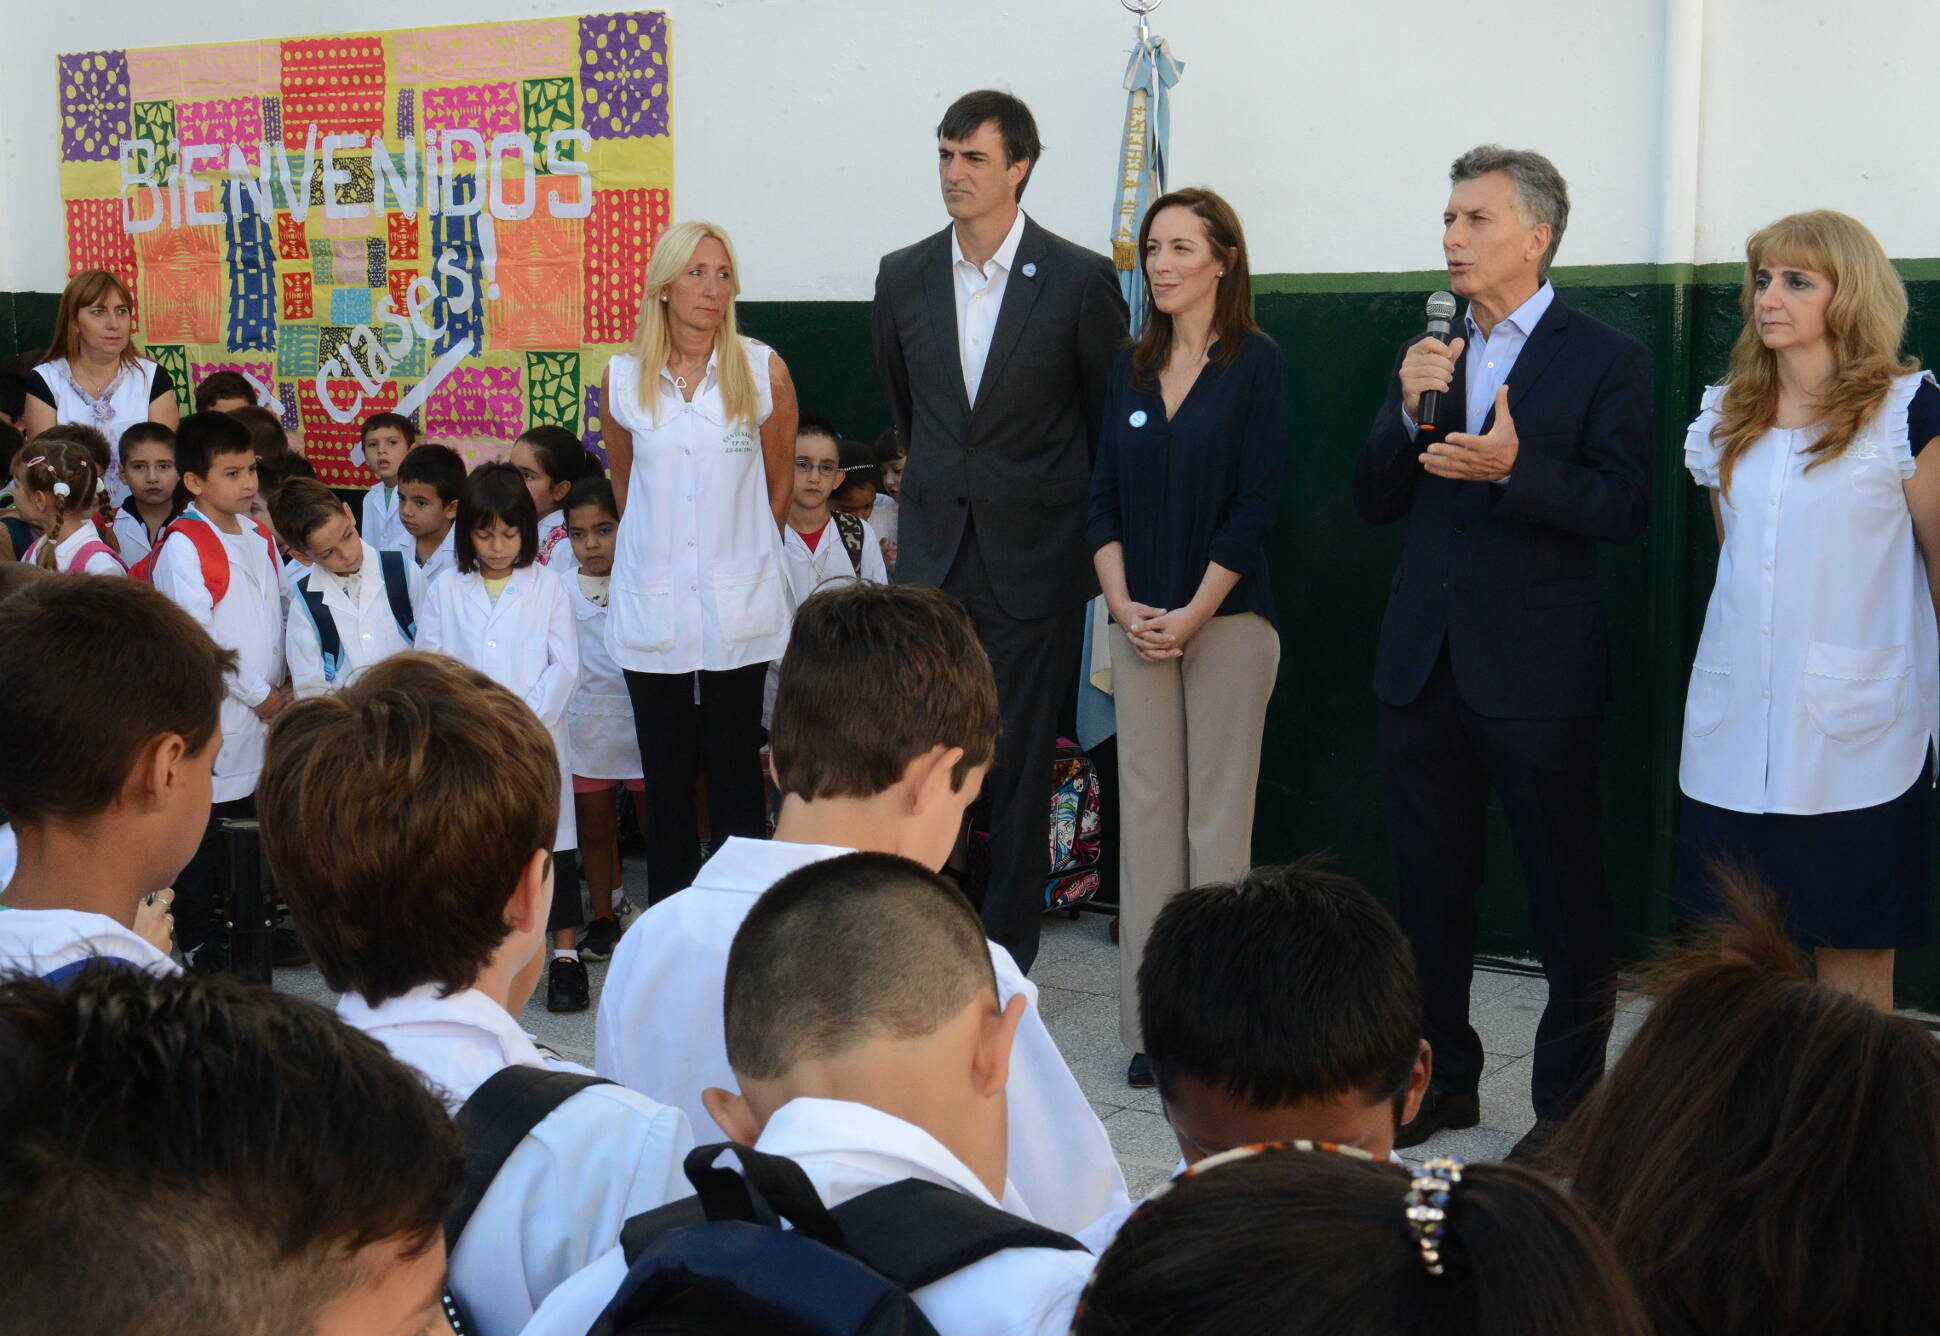  El presidente inauguró el ciclo lectivo 2016, en una escuela del partido de Lanús